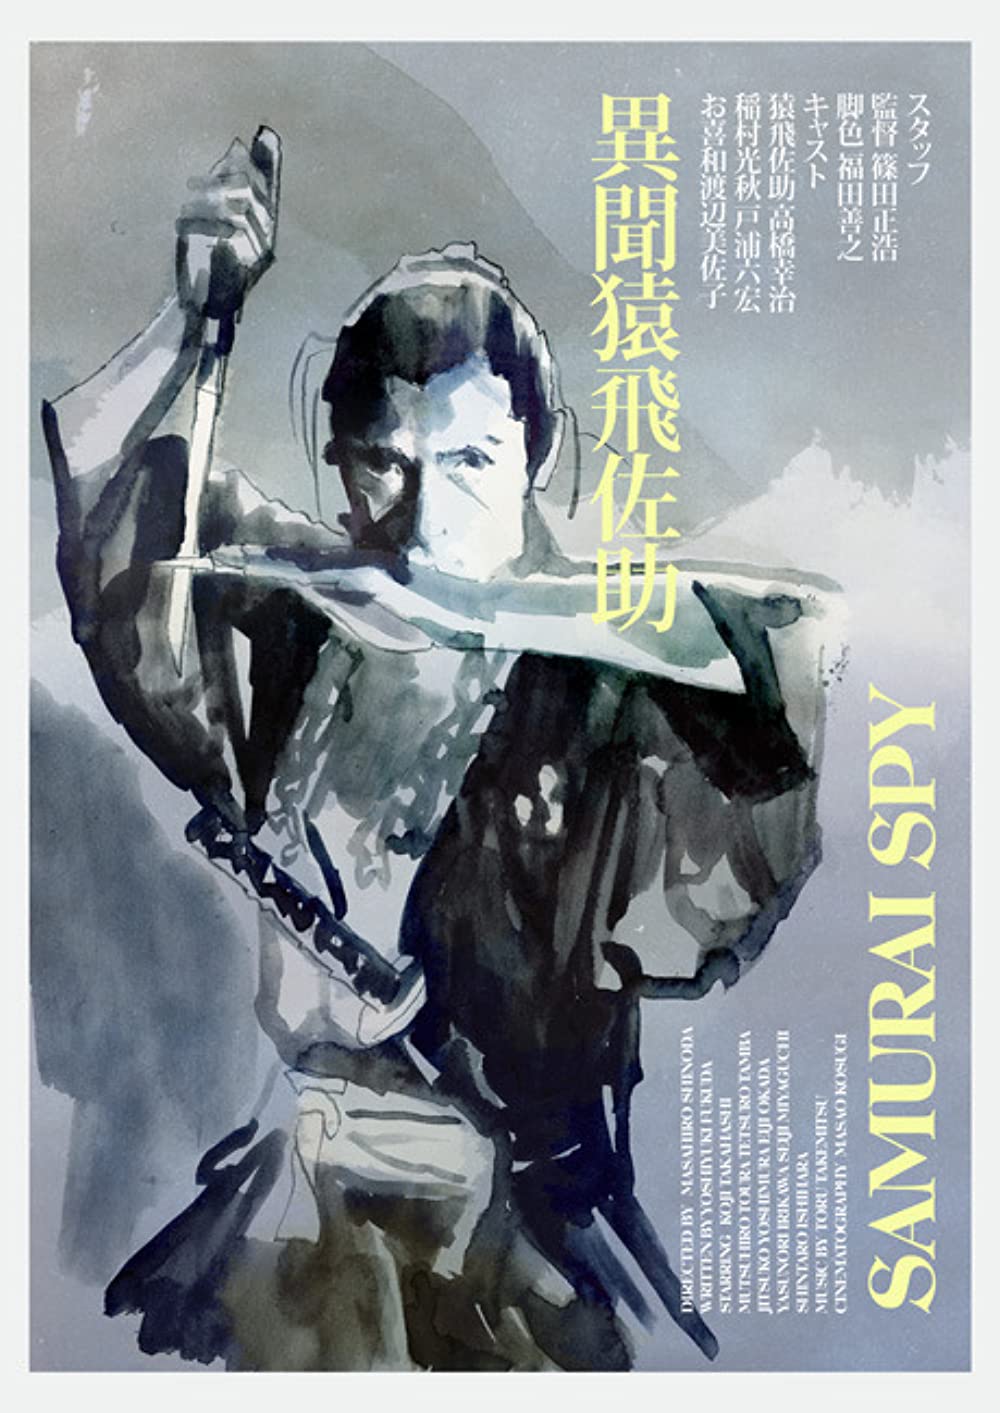 مشاهدة فيلم Samurai Spy (1965) مترجم